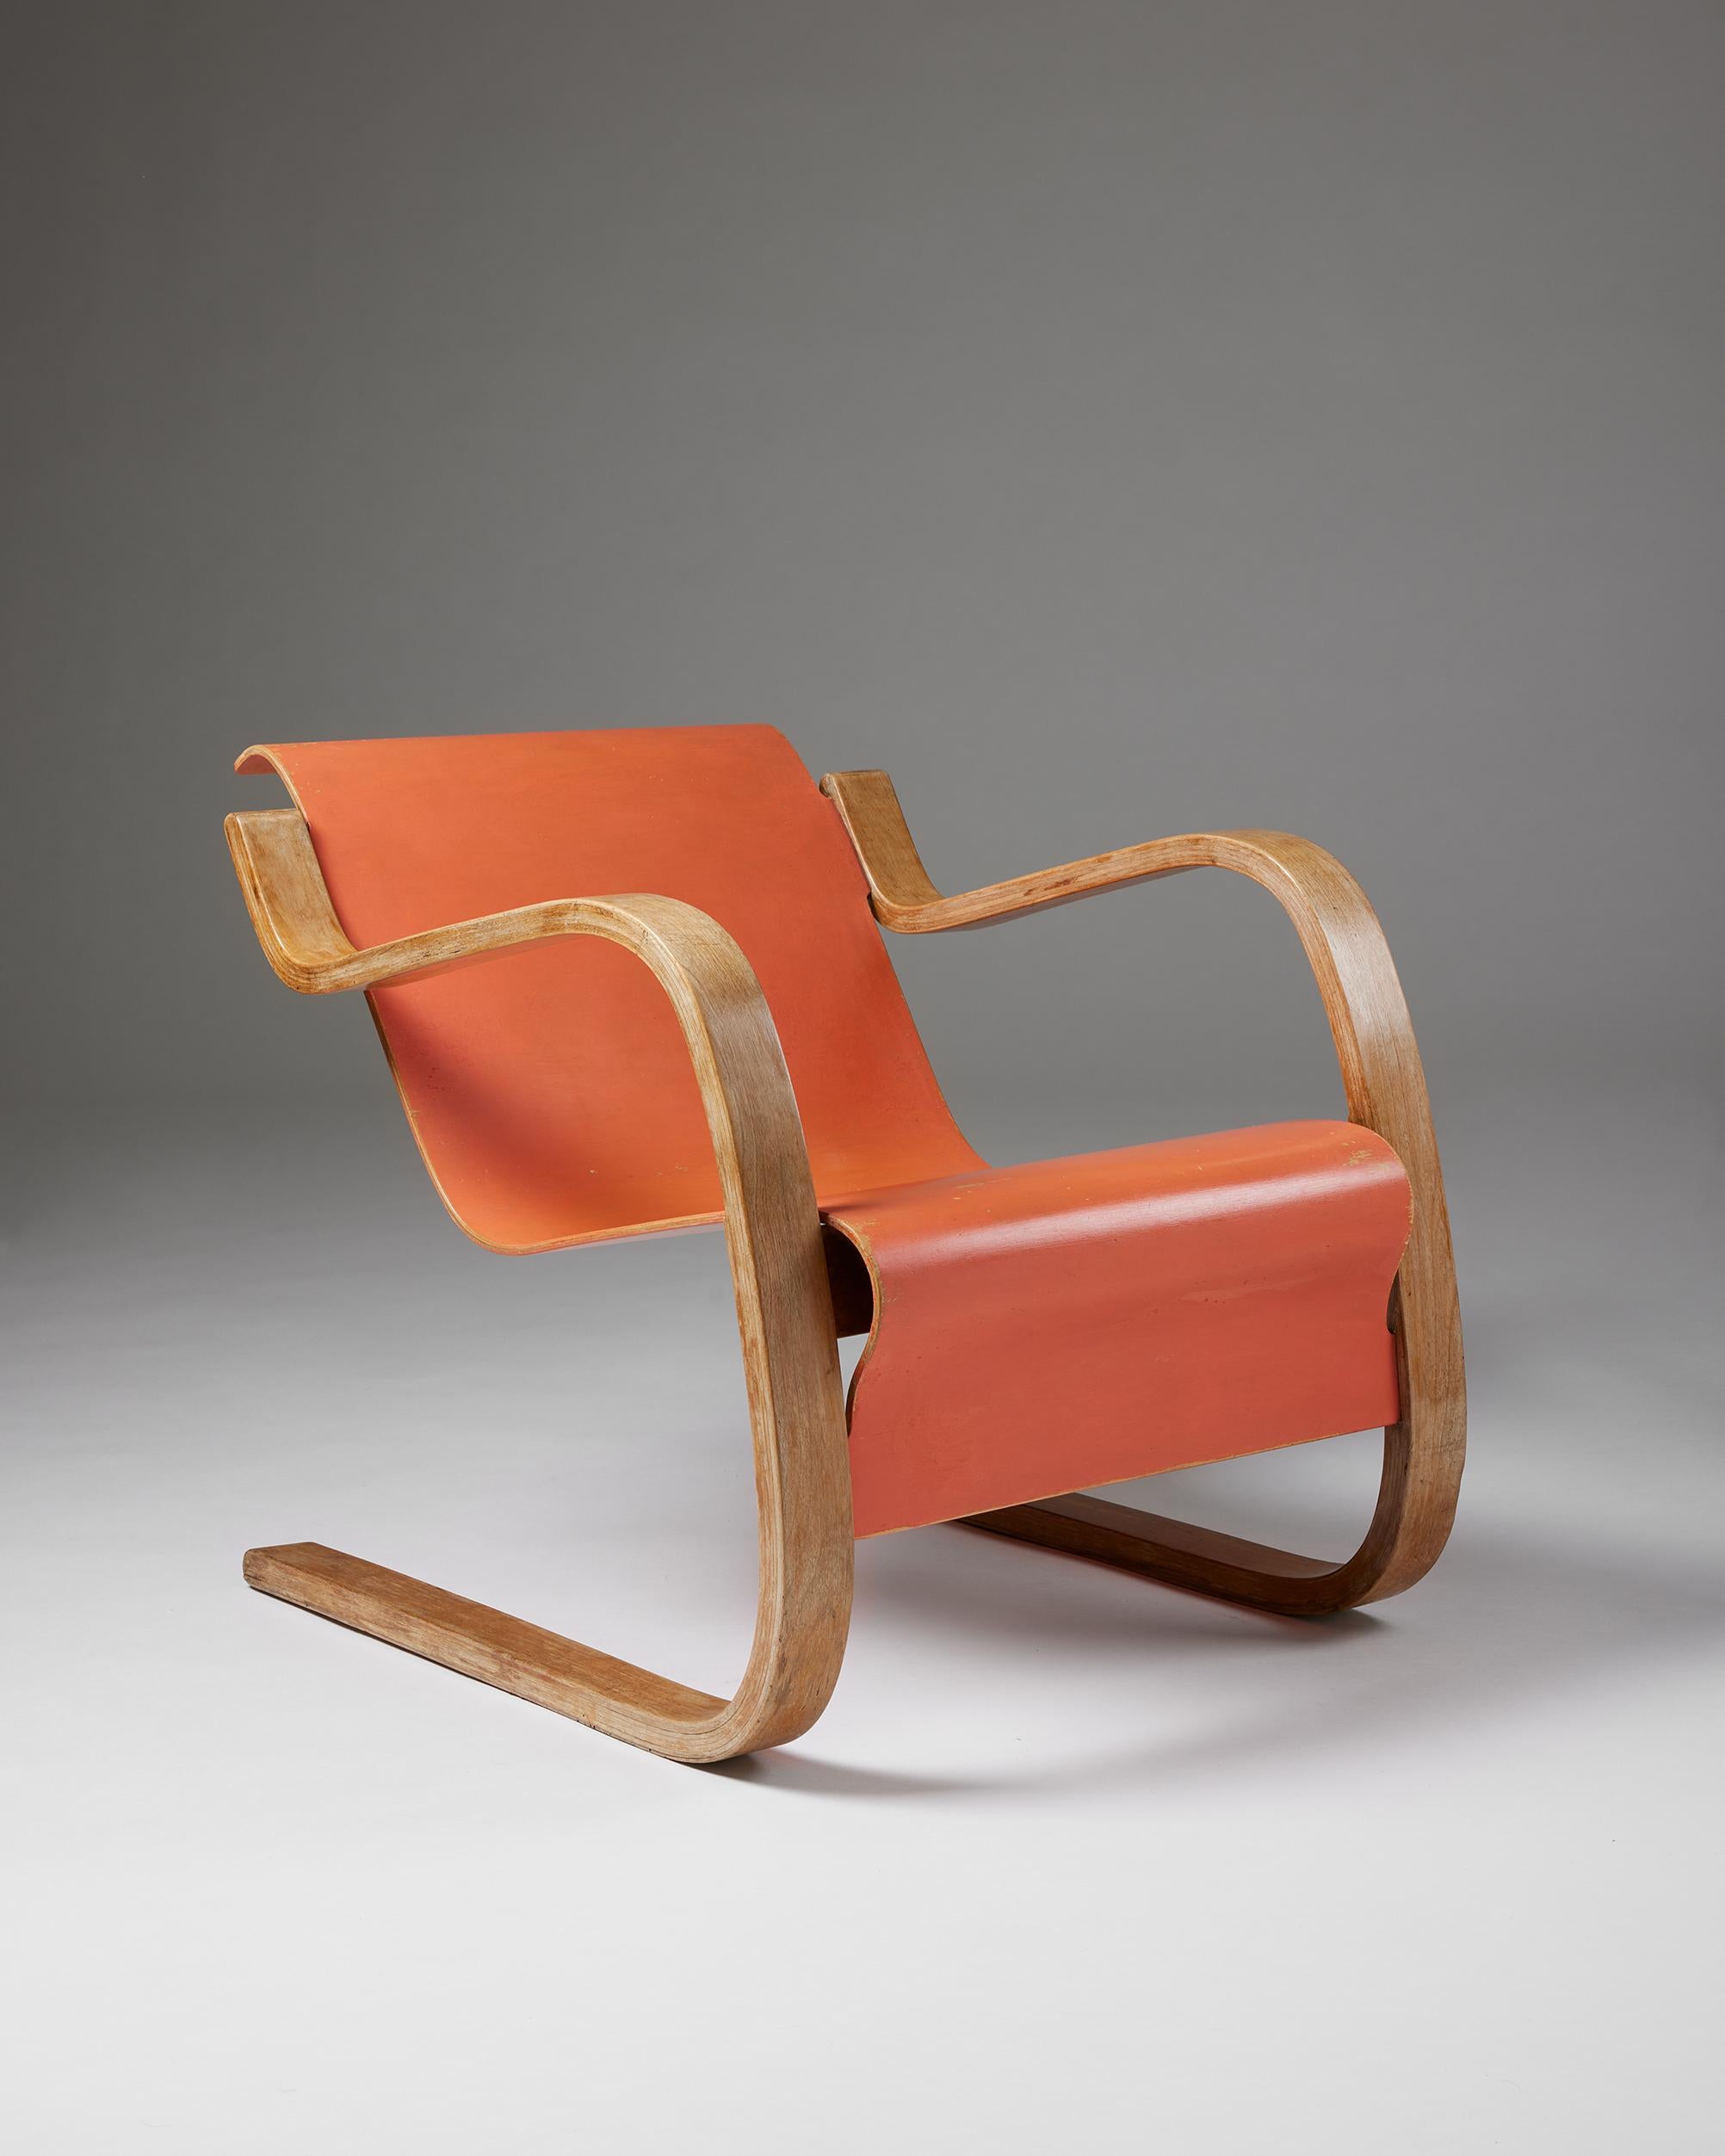 Rare fauteuil 'Small Paimio' modèle 42 dessiné par Alvar Aalto,
Finlande, 1932.

Placage de bouleau peint et contreplaqué cintré.

Estampillé.

H : 61,5 cm
L : 60,5 cm
D : 78 cm
SH : 37 cm
AH : 57 cm

Alvar Aalto était un architecte et designer